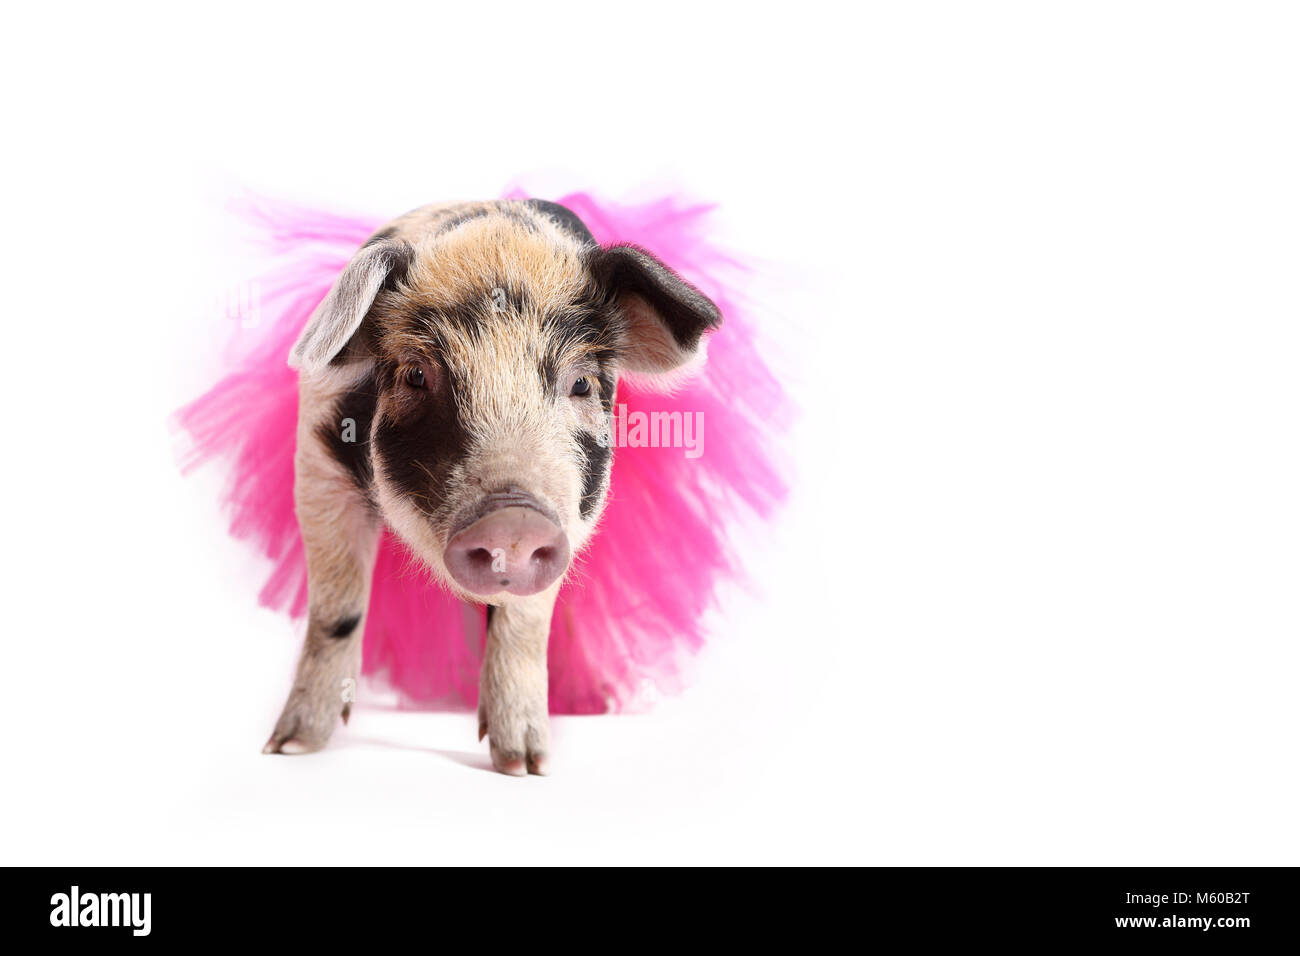 Hausschwein, Turopolje x?. Ferkel (4 Wochen alt) trägt einen rosa Tutu, stehend. Studio Bild vor einem weißen Hintergrund zu sehen. Deutschland Stockfoto